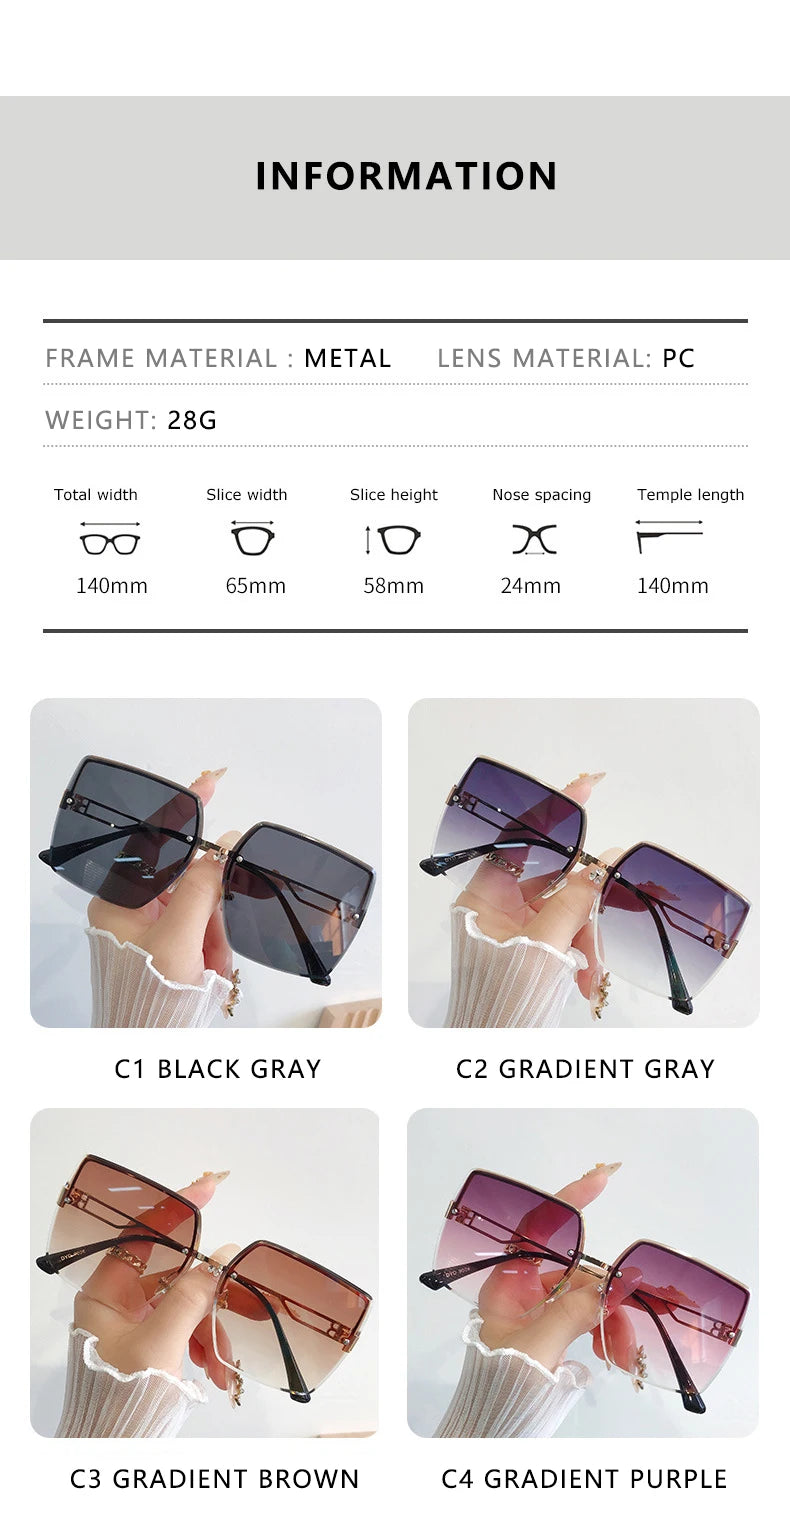 Brand Fashion Square Sunglasses Woman Mirror Black Gradient Sun Glasses Female Big Frame Modern Retro Vintage Oculos De Sol